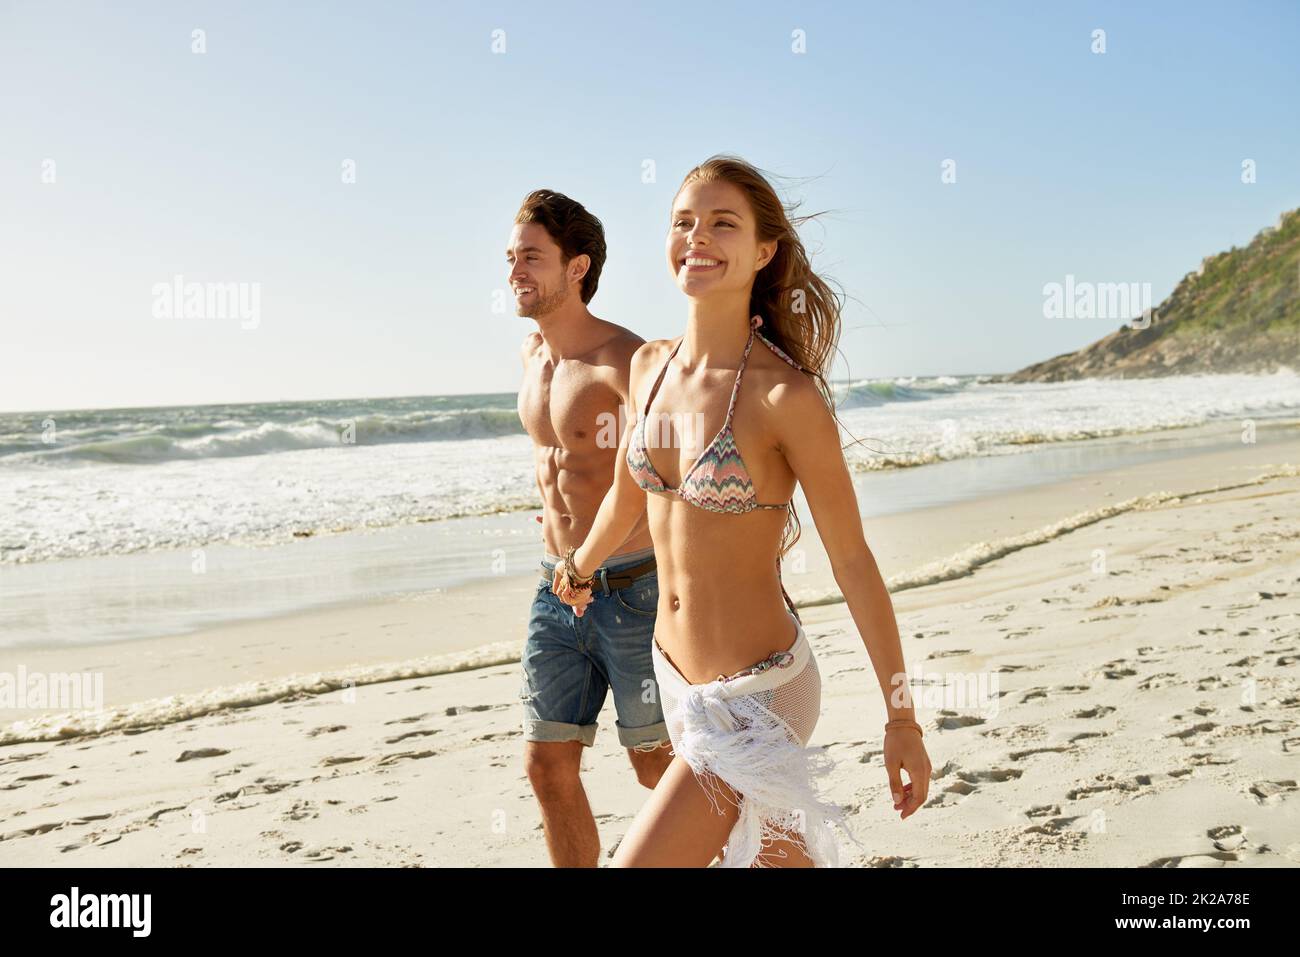 Buon giorno in spiaggia. Scatto di una giovane coppia romantica che cammina a mano sulla spiaggia. Foto Stock